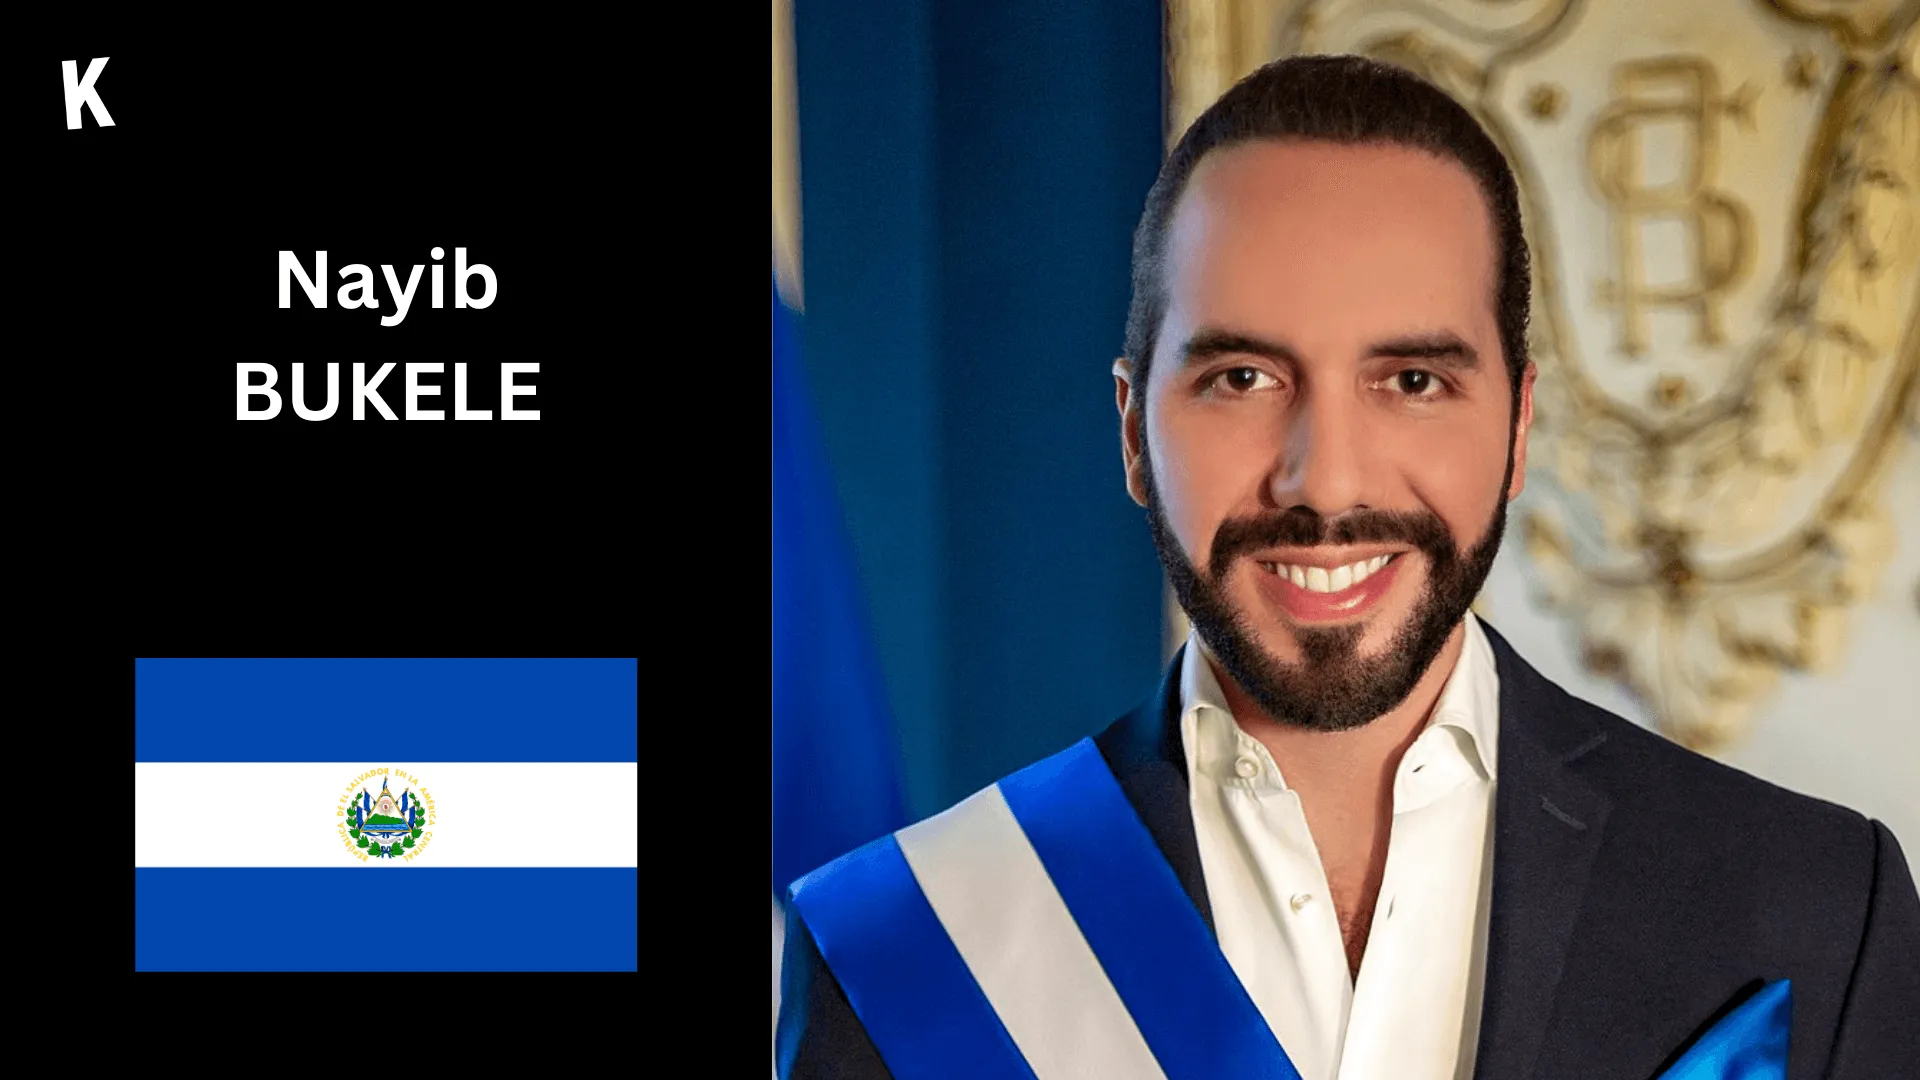 Portrait de Nayib Bukele avec le drapeau du Salvador